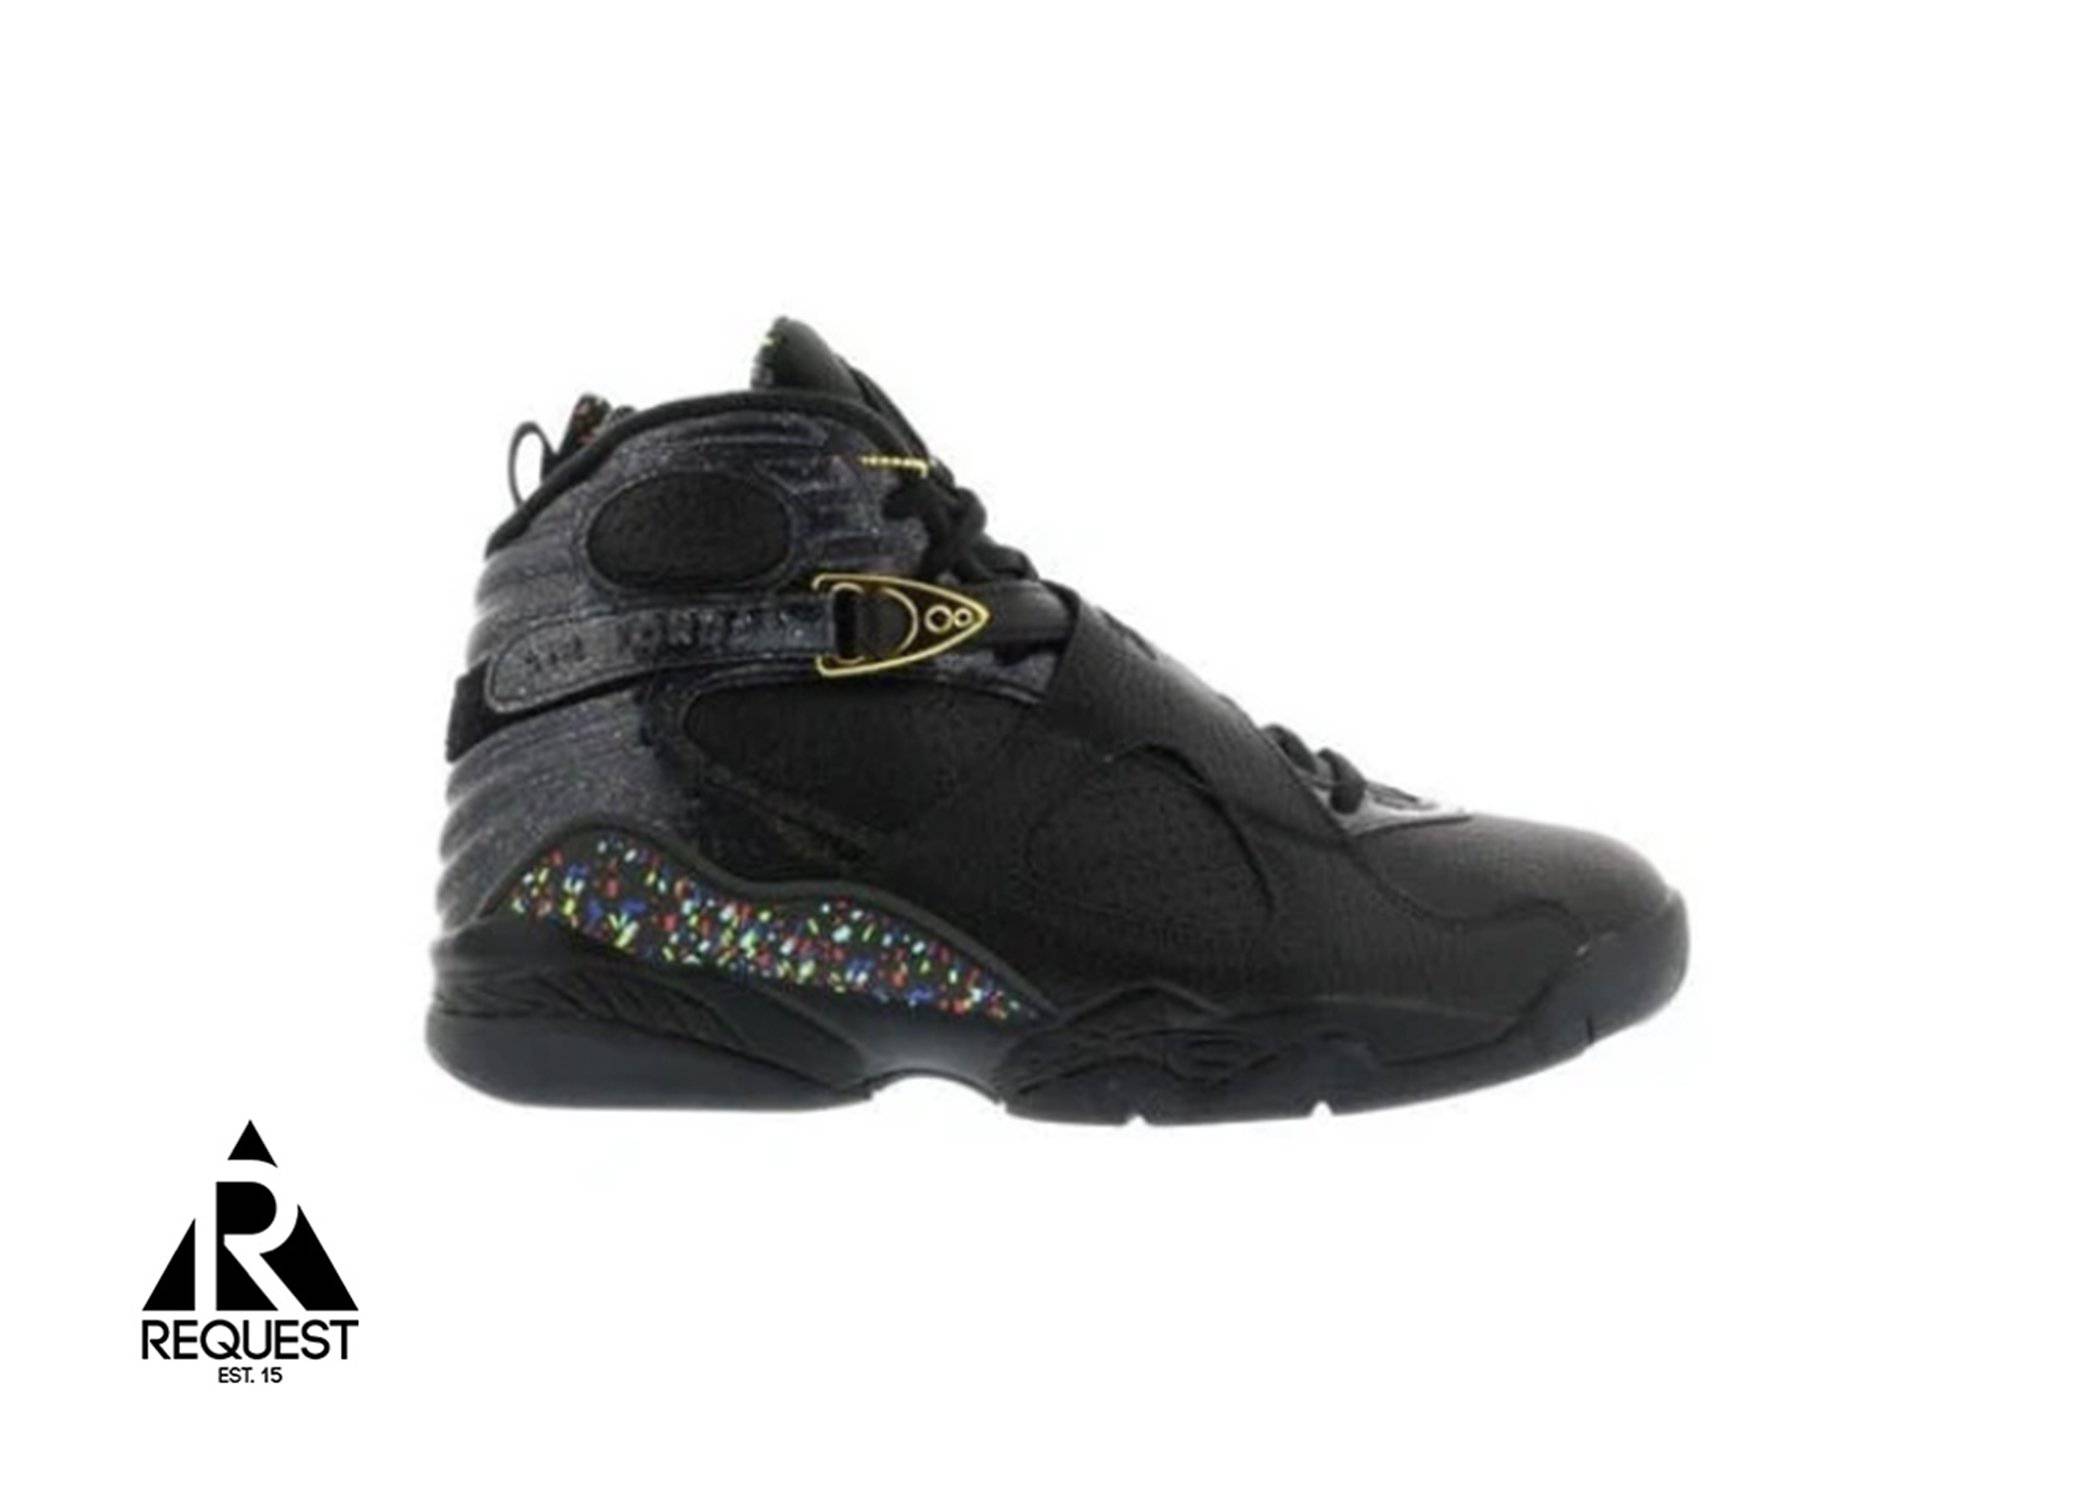 Air Jordan 8 Retro “Confetti”